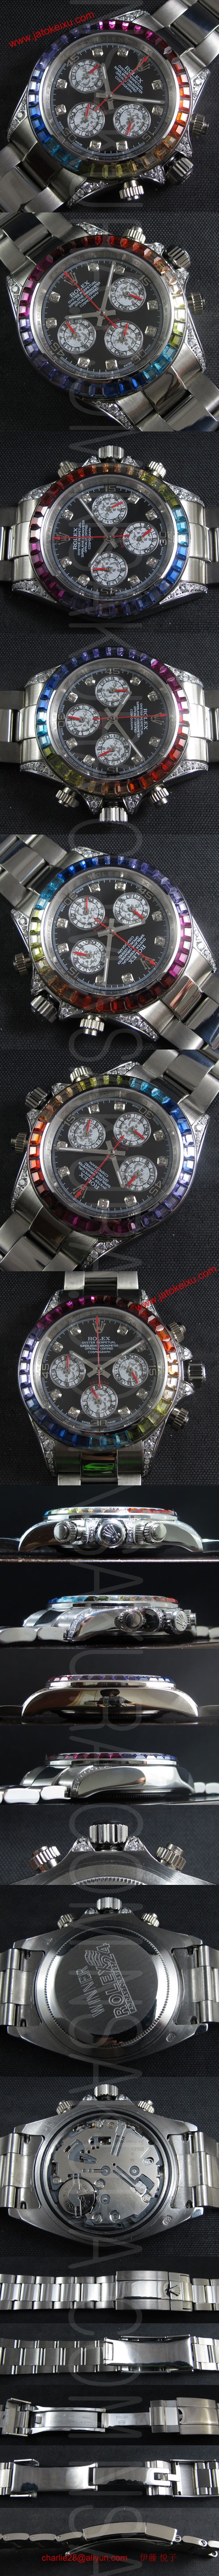 ロレックス 20140225104017 スーパーコピー時計